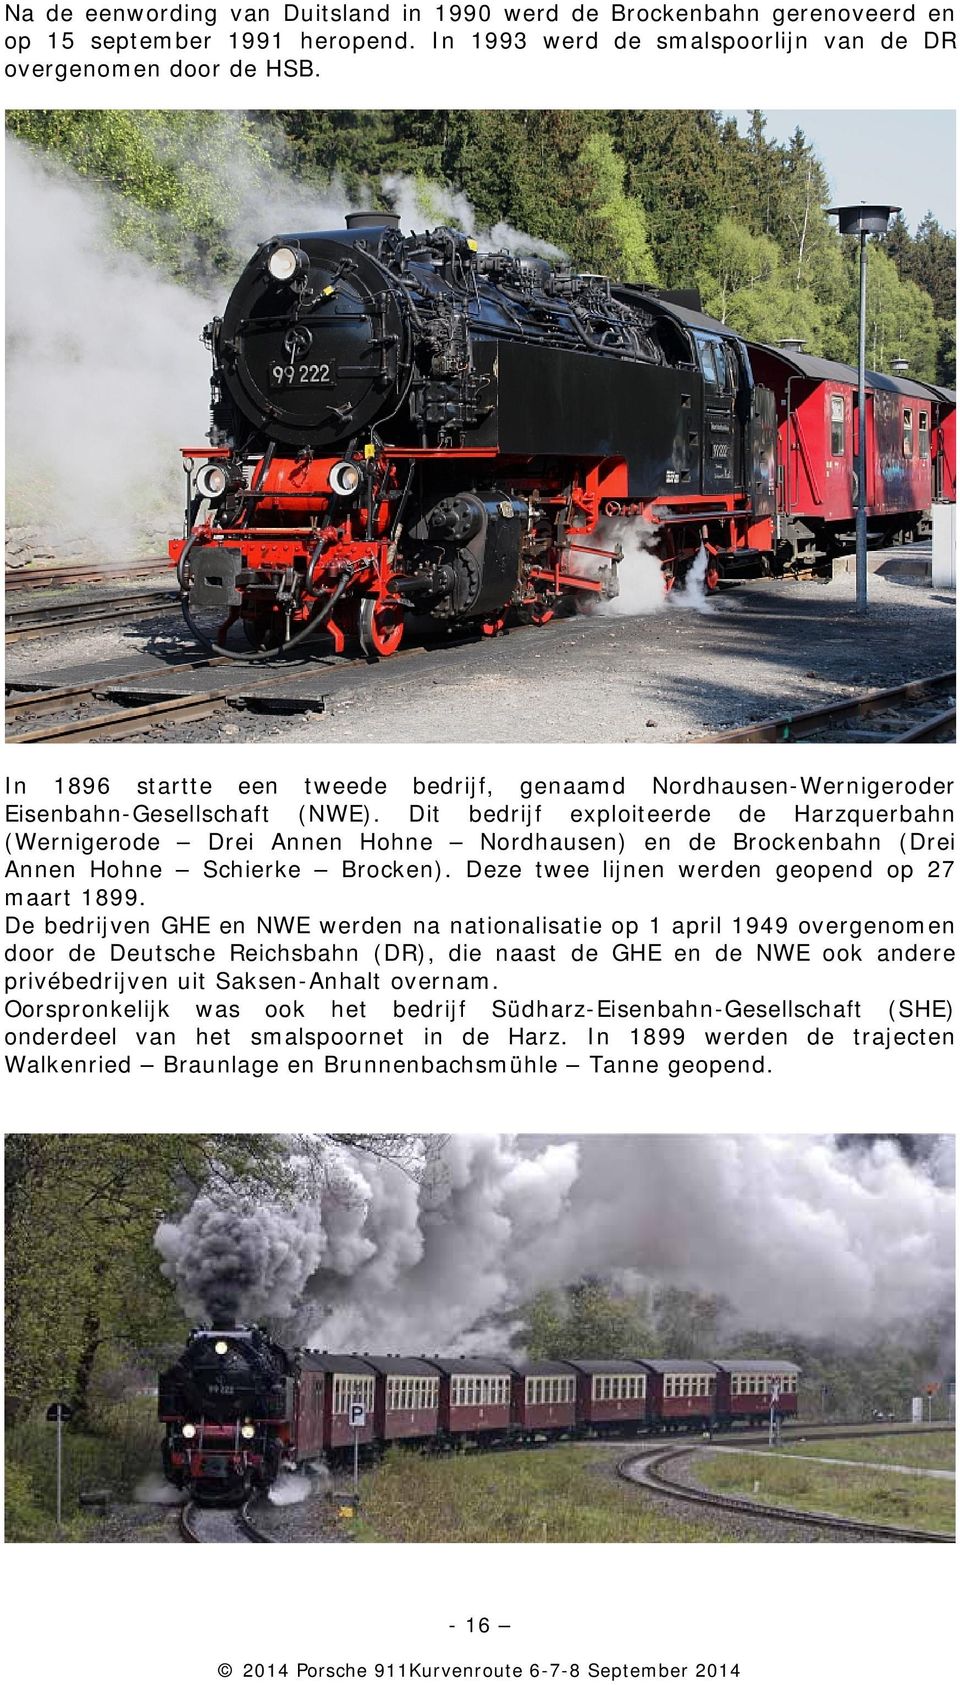 Dit bedrijf exploiteerde de Harzquerbahn (Wernigerode Drei Annen Hohne Nordhausen) en de Brockenbahn (Drei Annen Hohne Schierke Brocken). Deze twee lijnen werden geopend op 27 maart 1899.